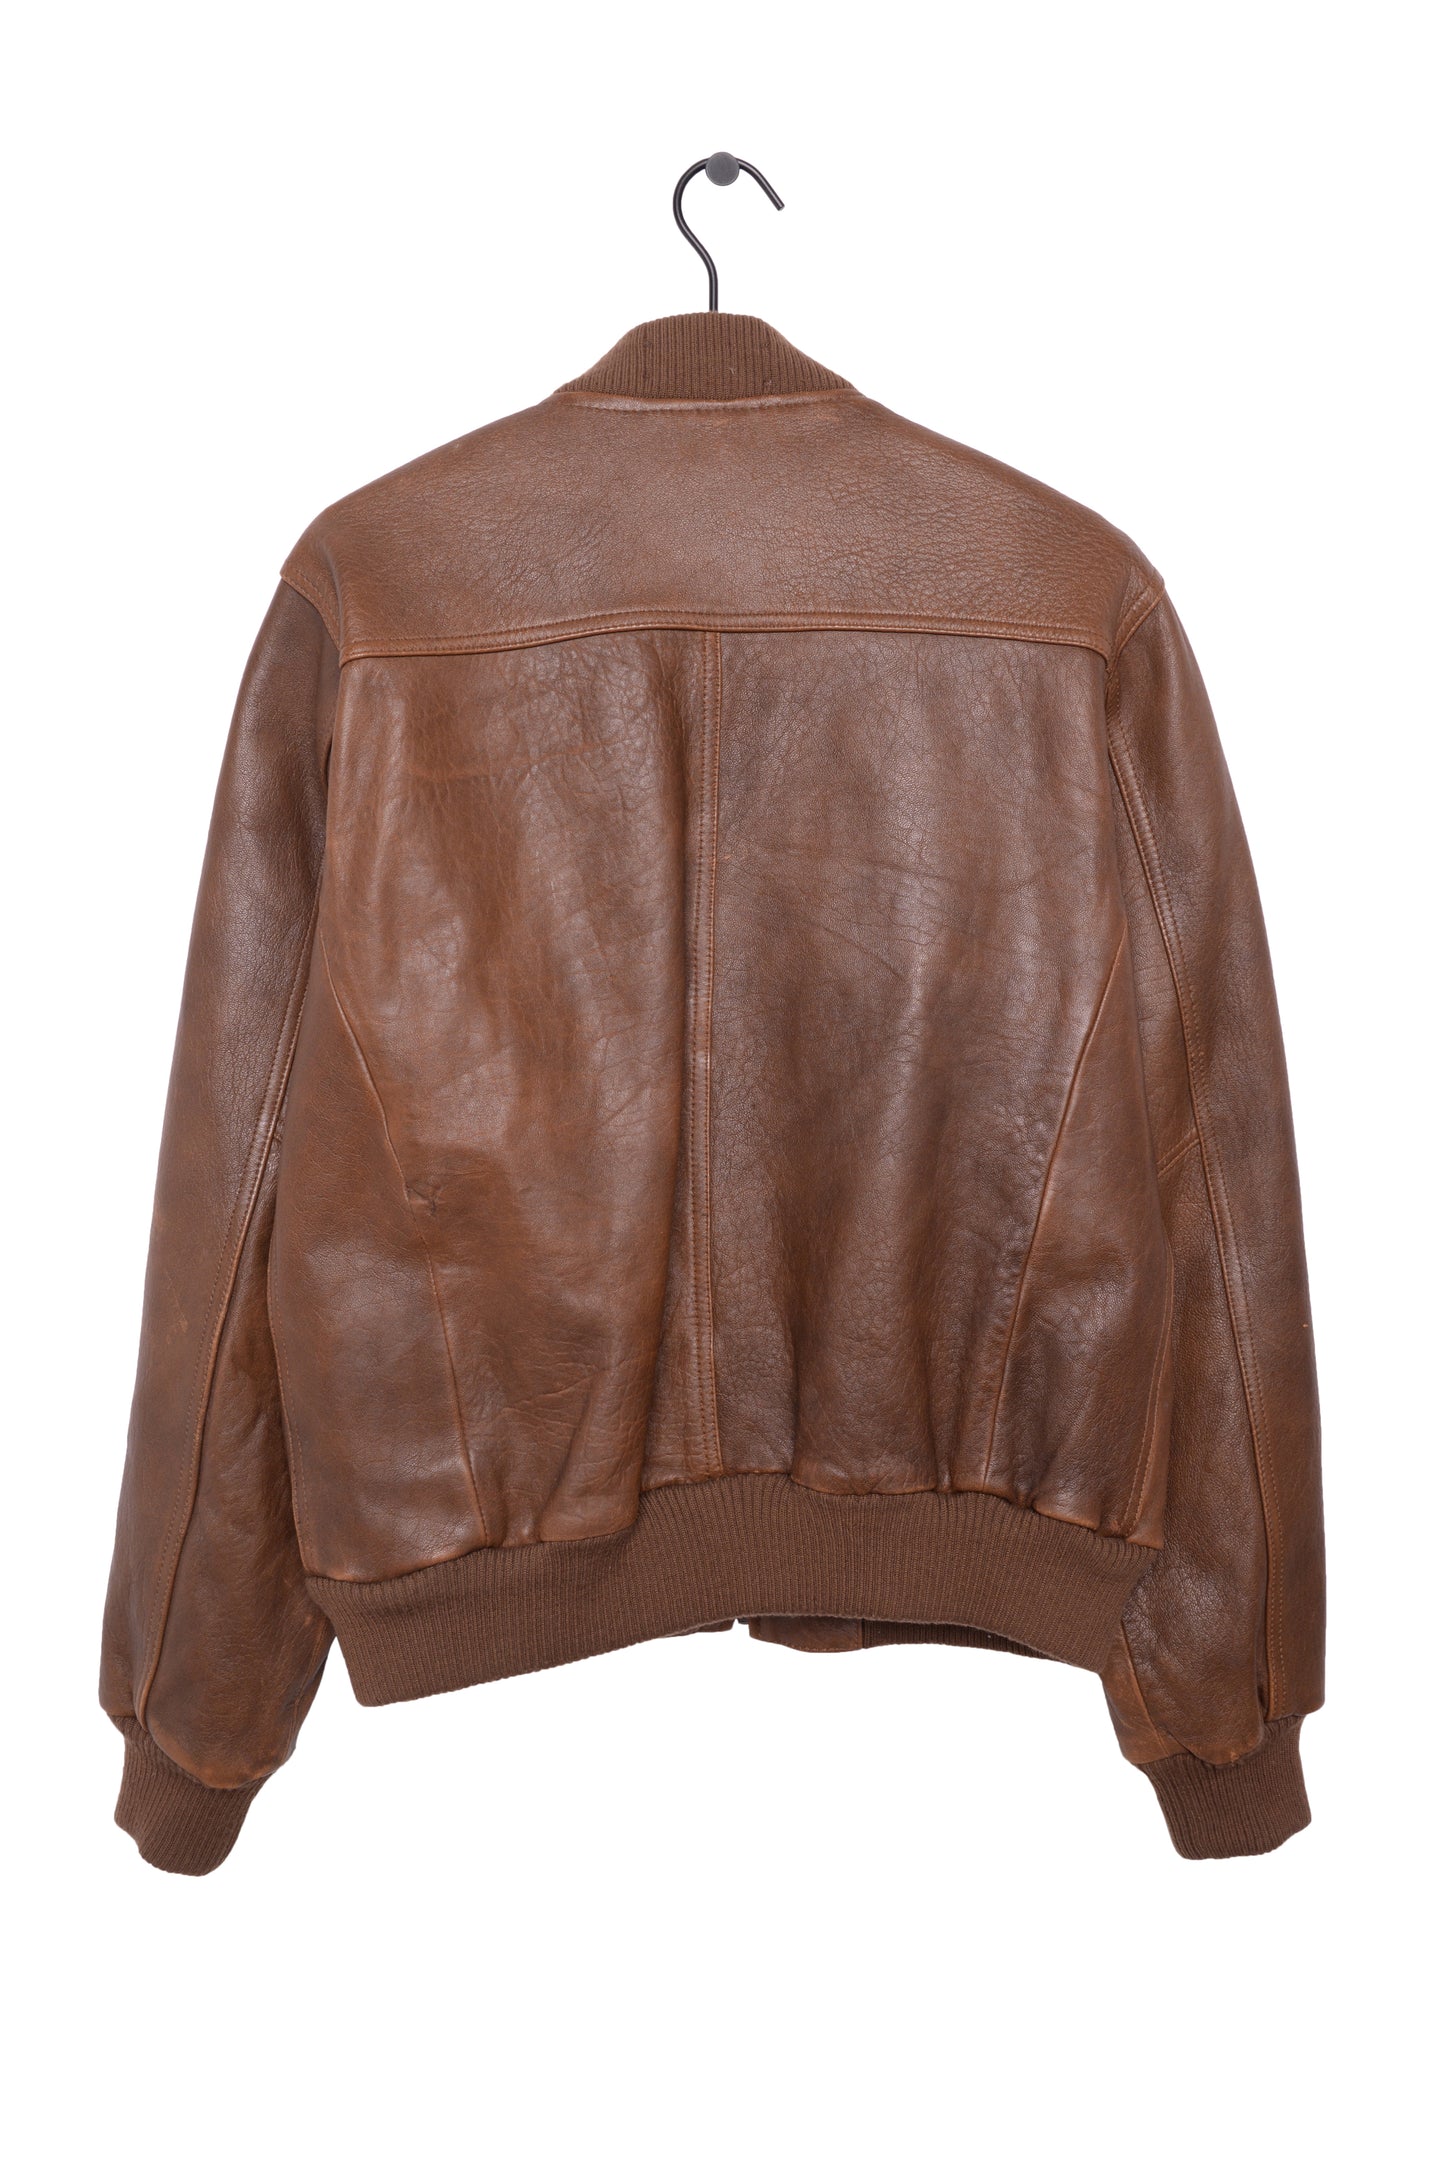 Caramel Leather Bomber Jacket